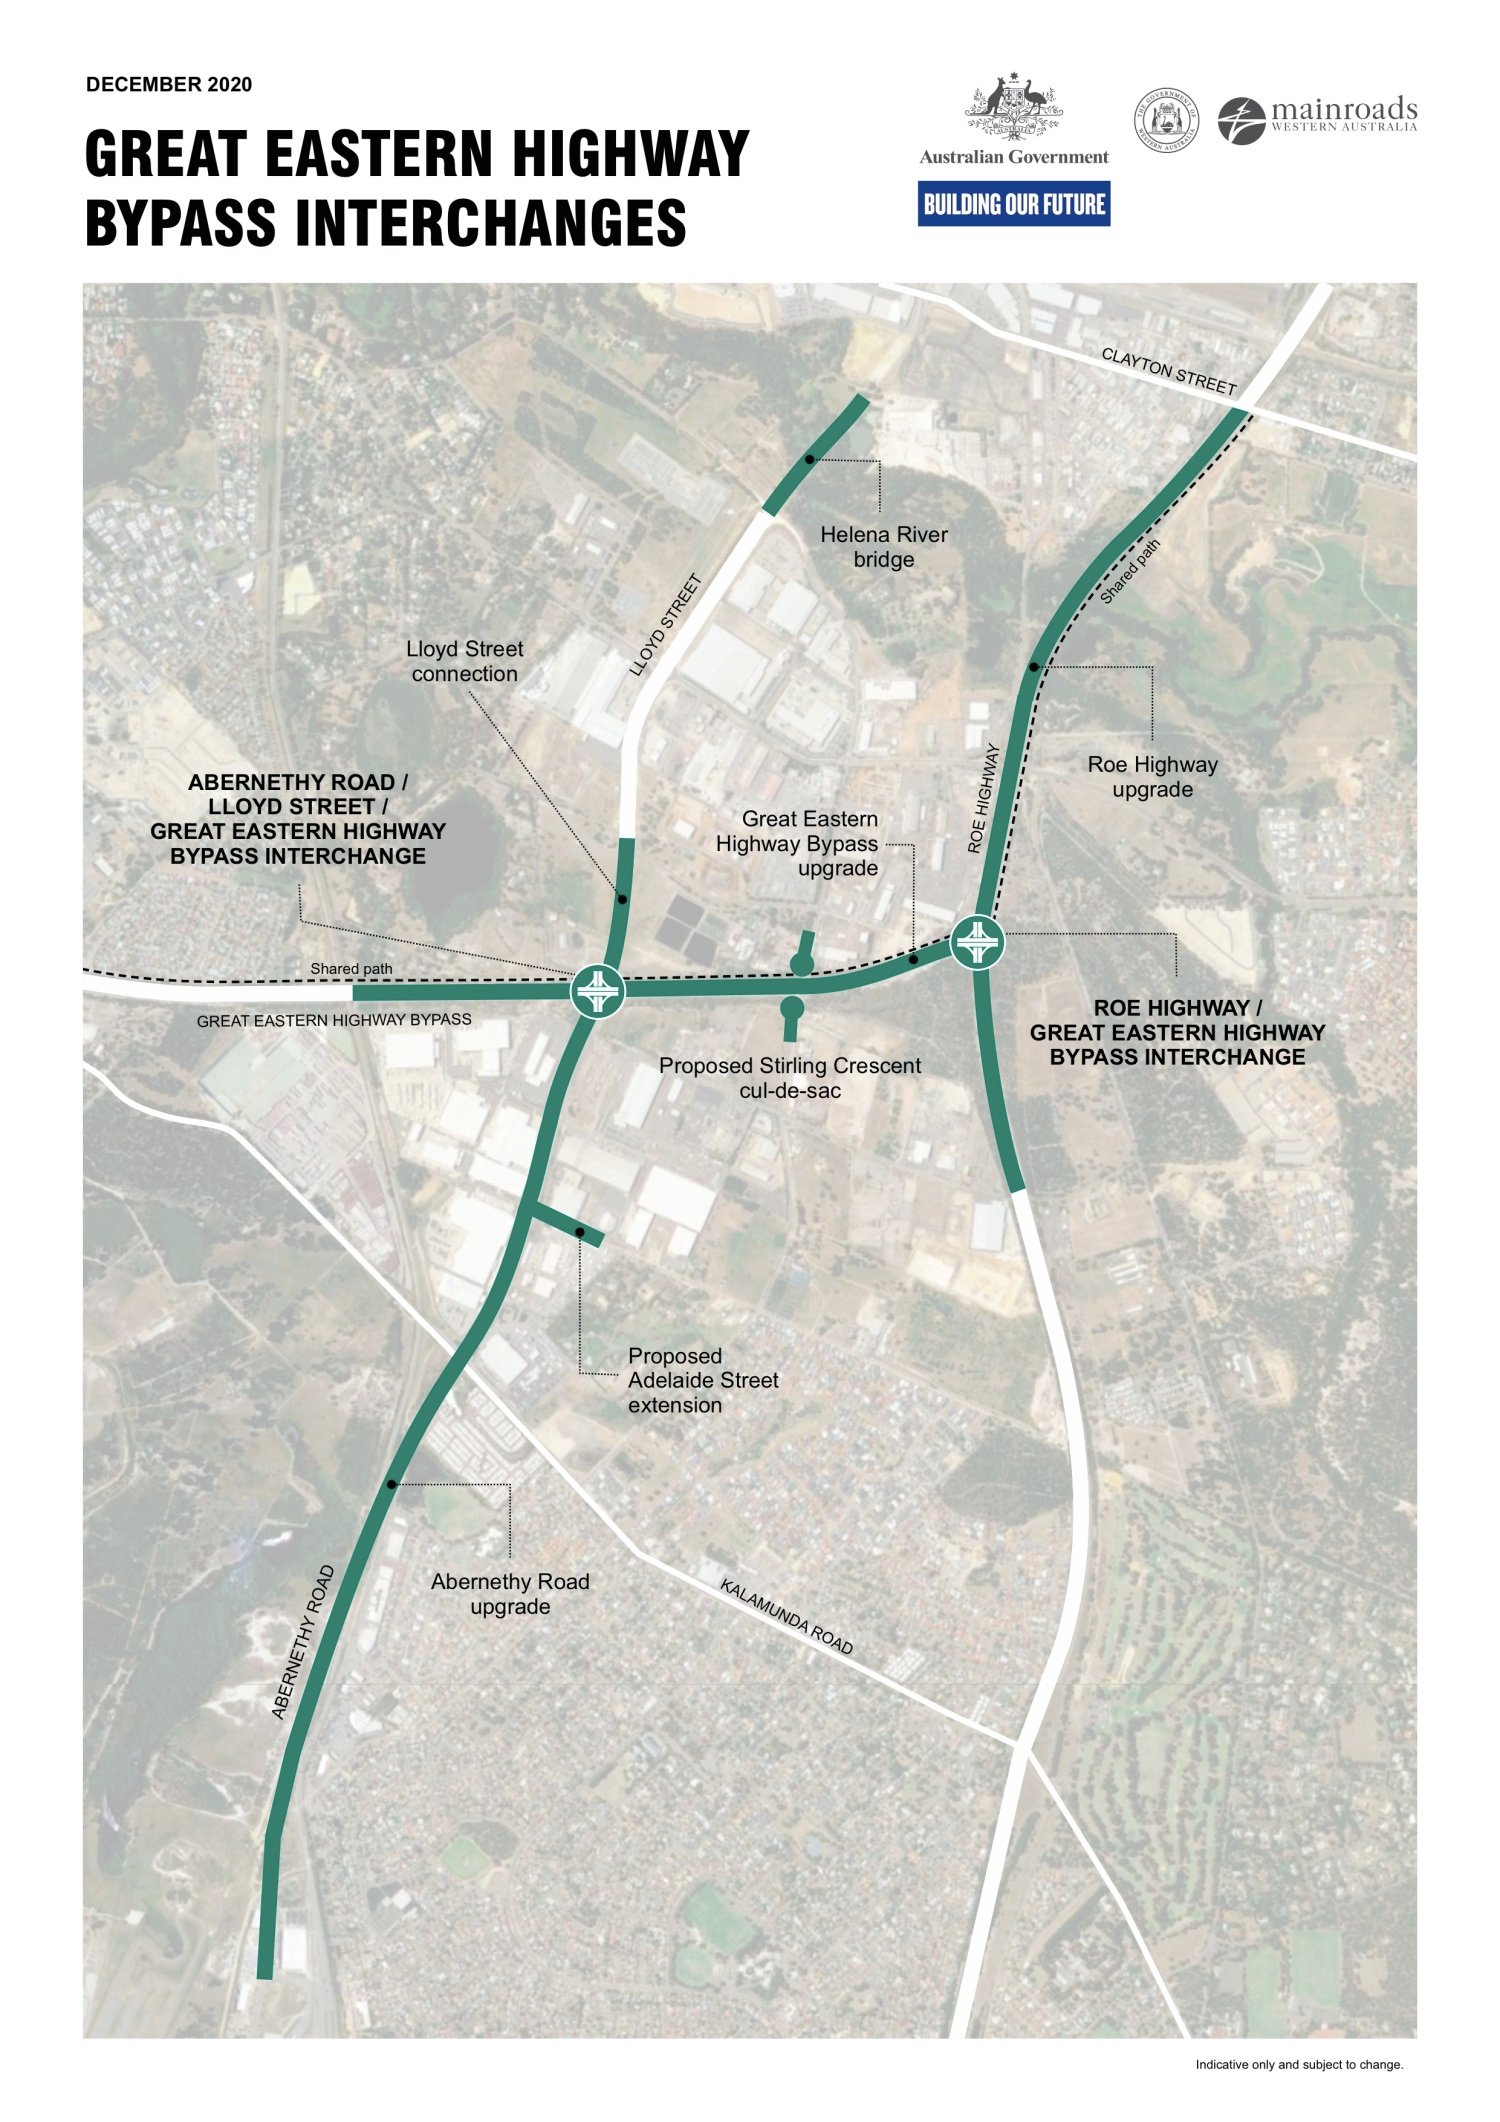 geh-bypass-interchanges-map